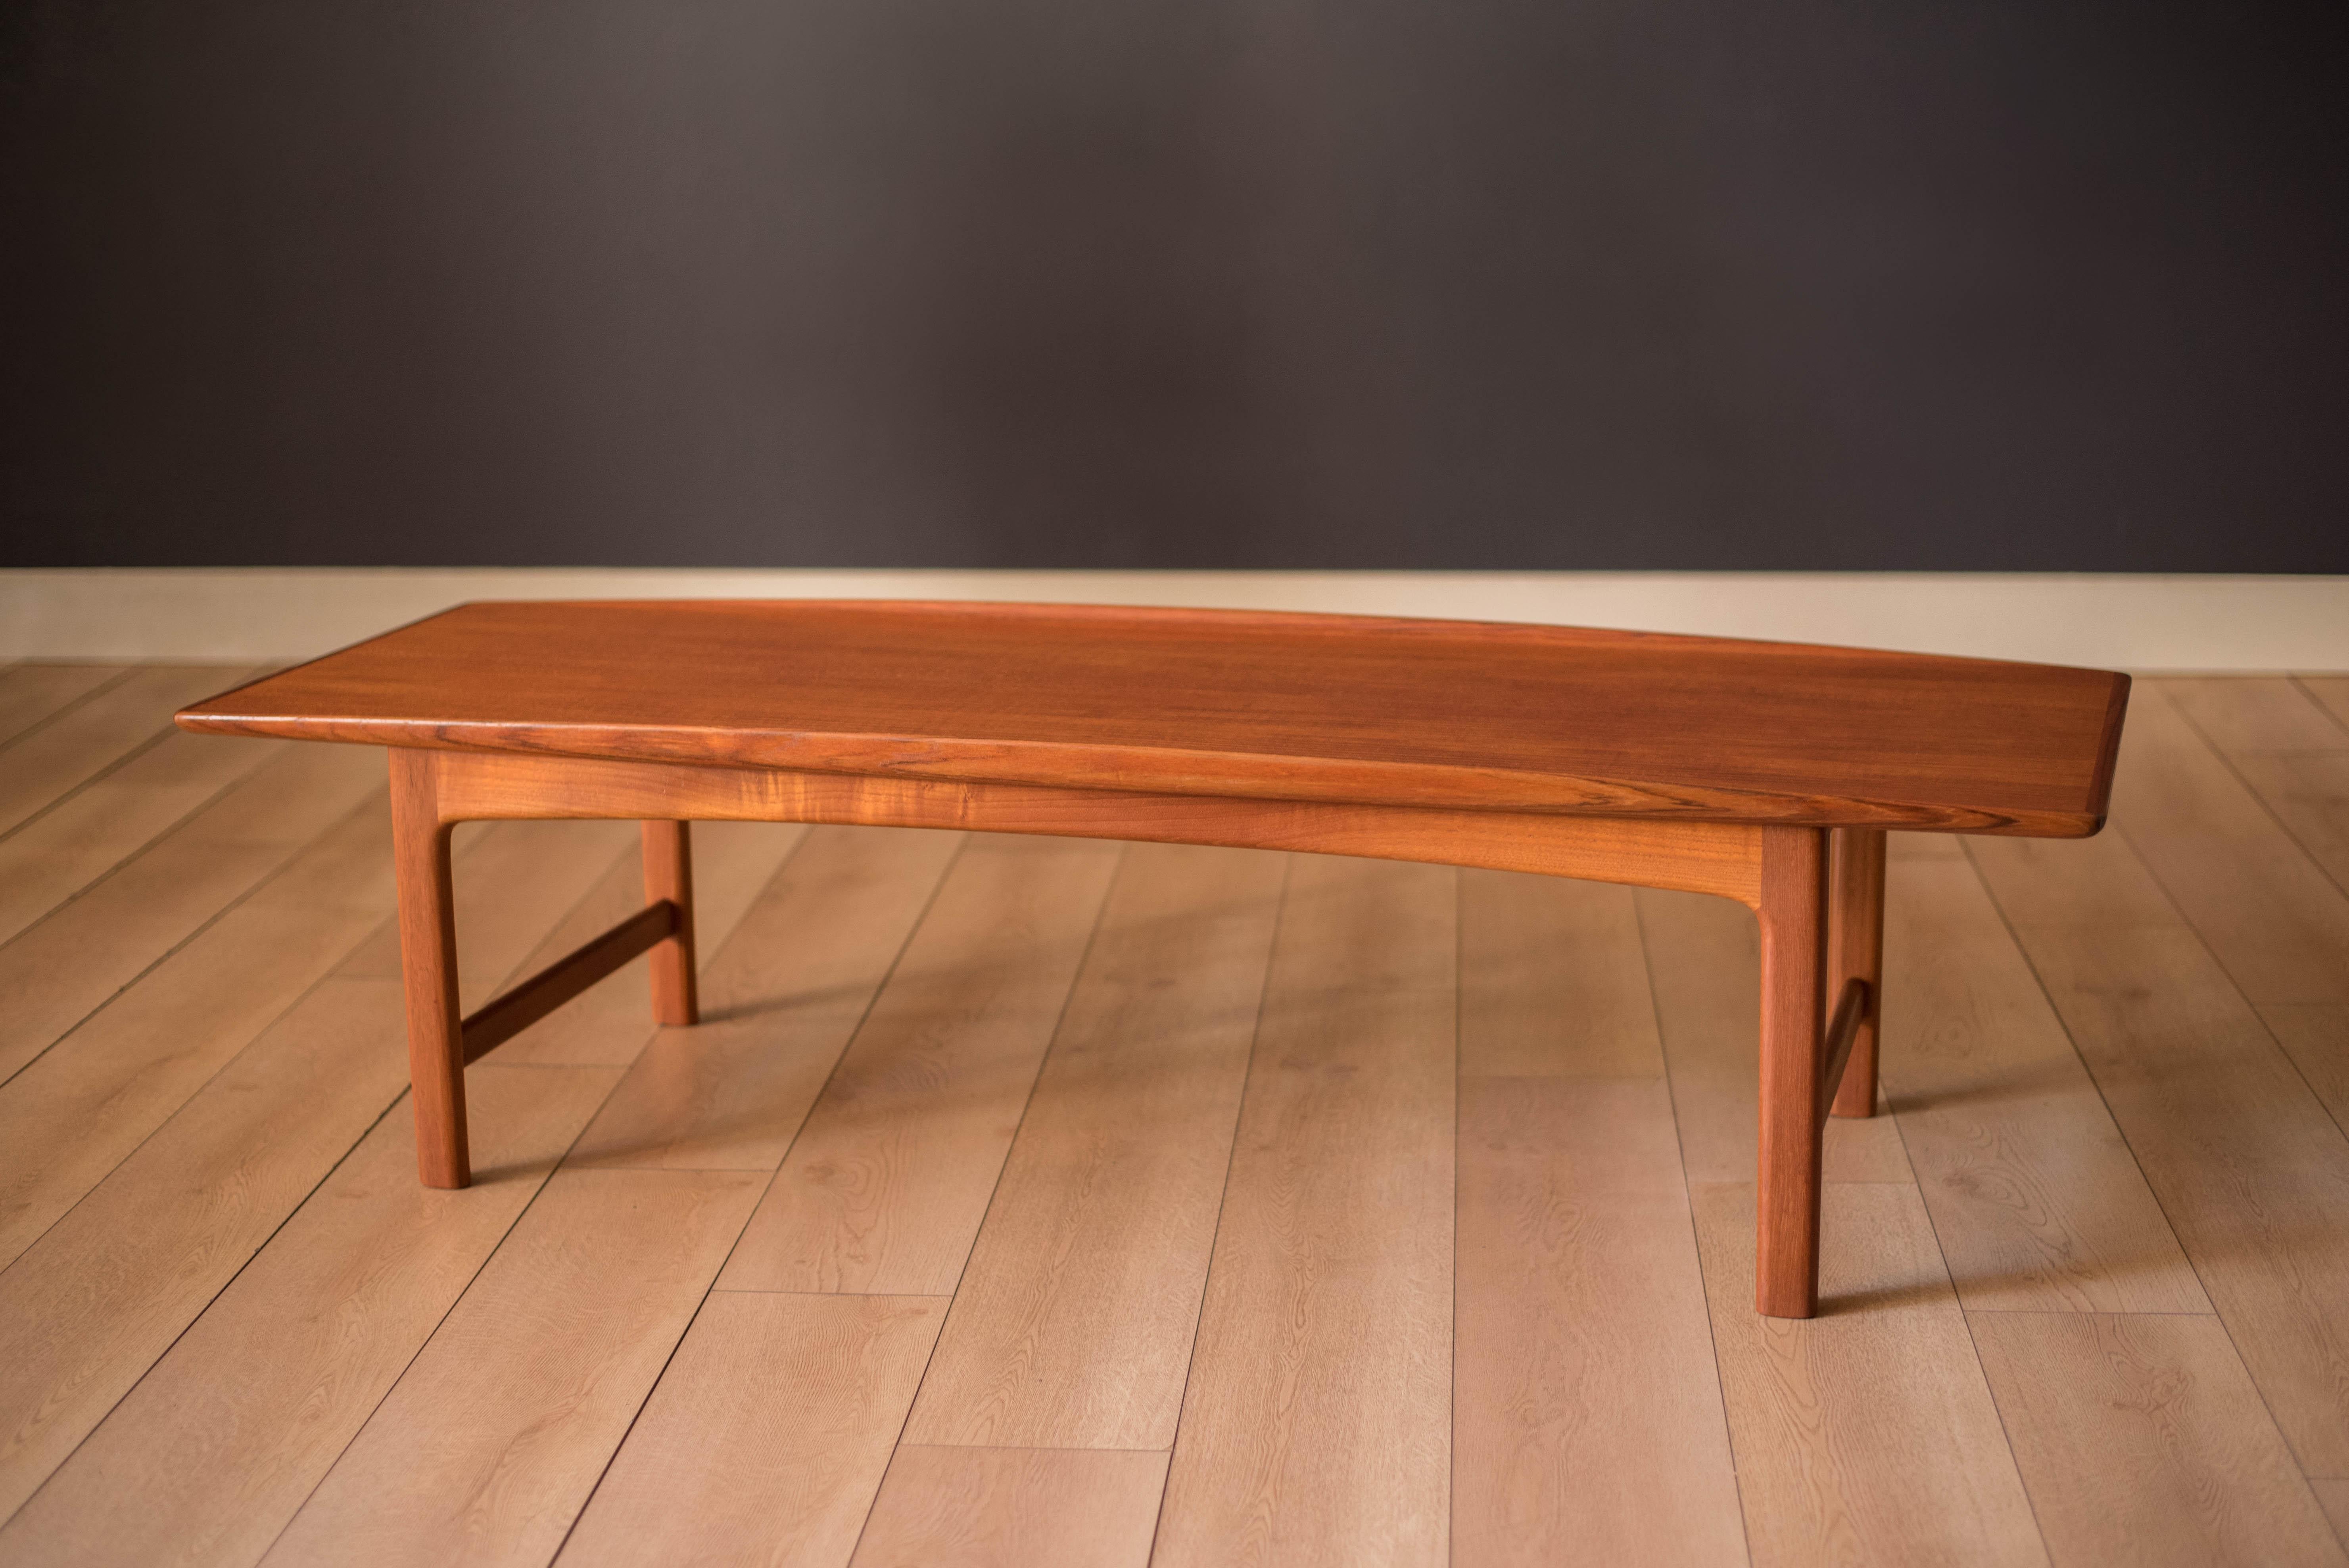 Table basse moderne du milieu du siècle en teck, conçue par Folke Ohlsson pour DUX, Suède. Cette pièce classique présente un grain naturel chaleureux et des bords sculptés en relief. La base de support est construite avec des pieds solides en teck.